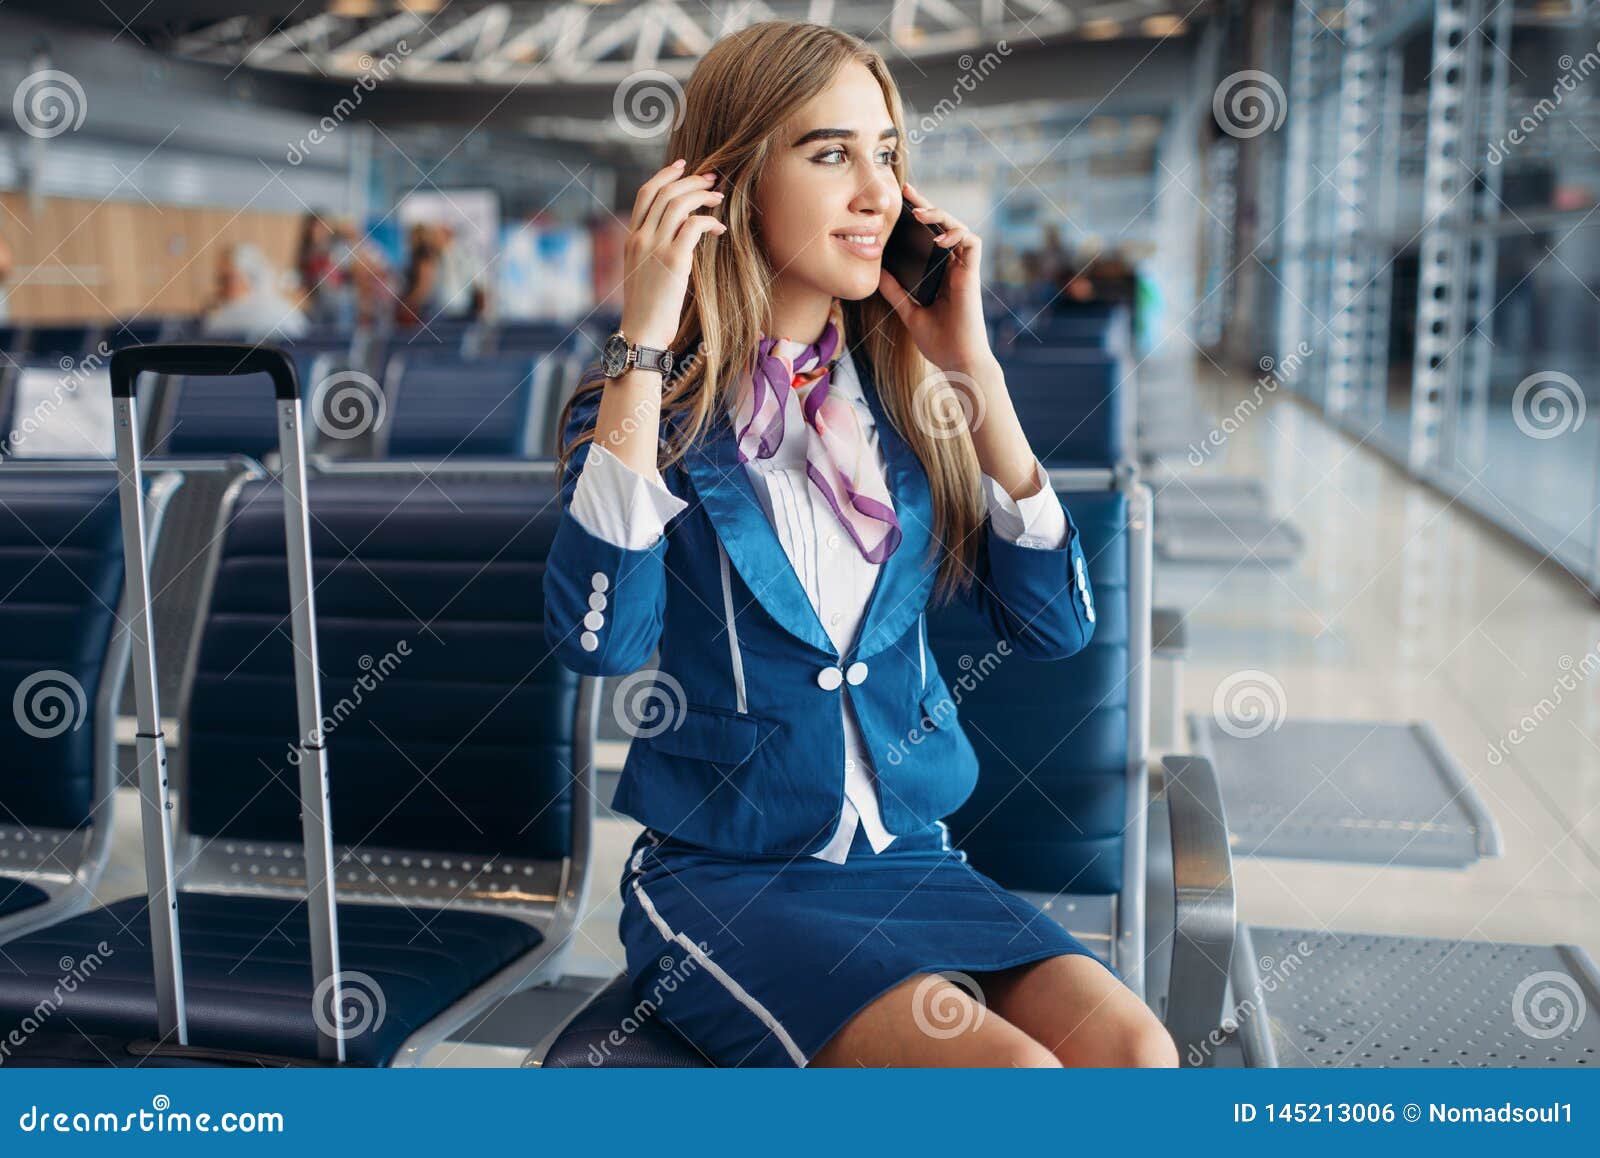 空中小姐坐私人喷气式飞机梯子 库存照片. 图片 包括有 秋田, 喷气机, 如同, 商业, 成人, 豪华, 开放 - 35749730